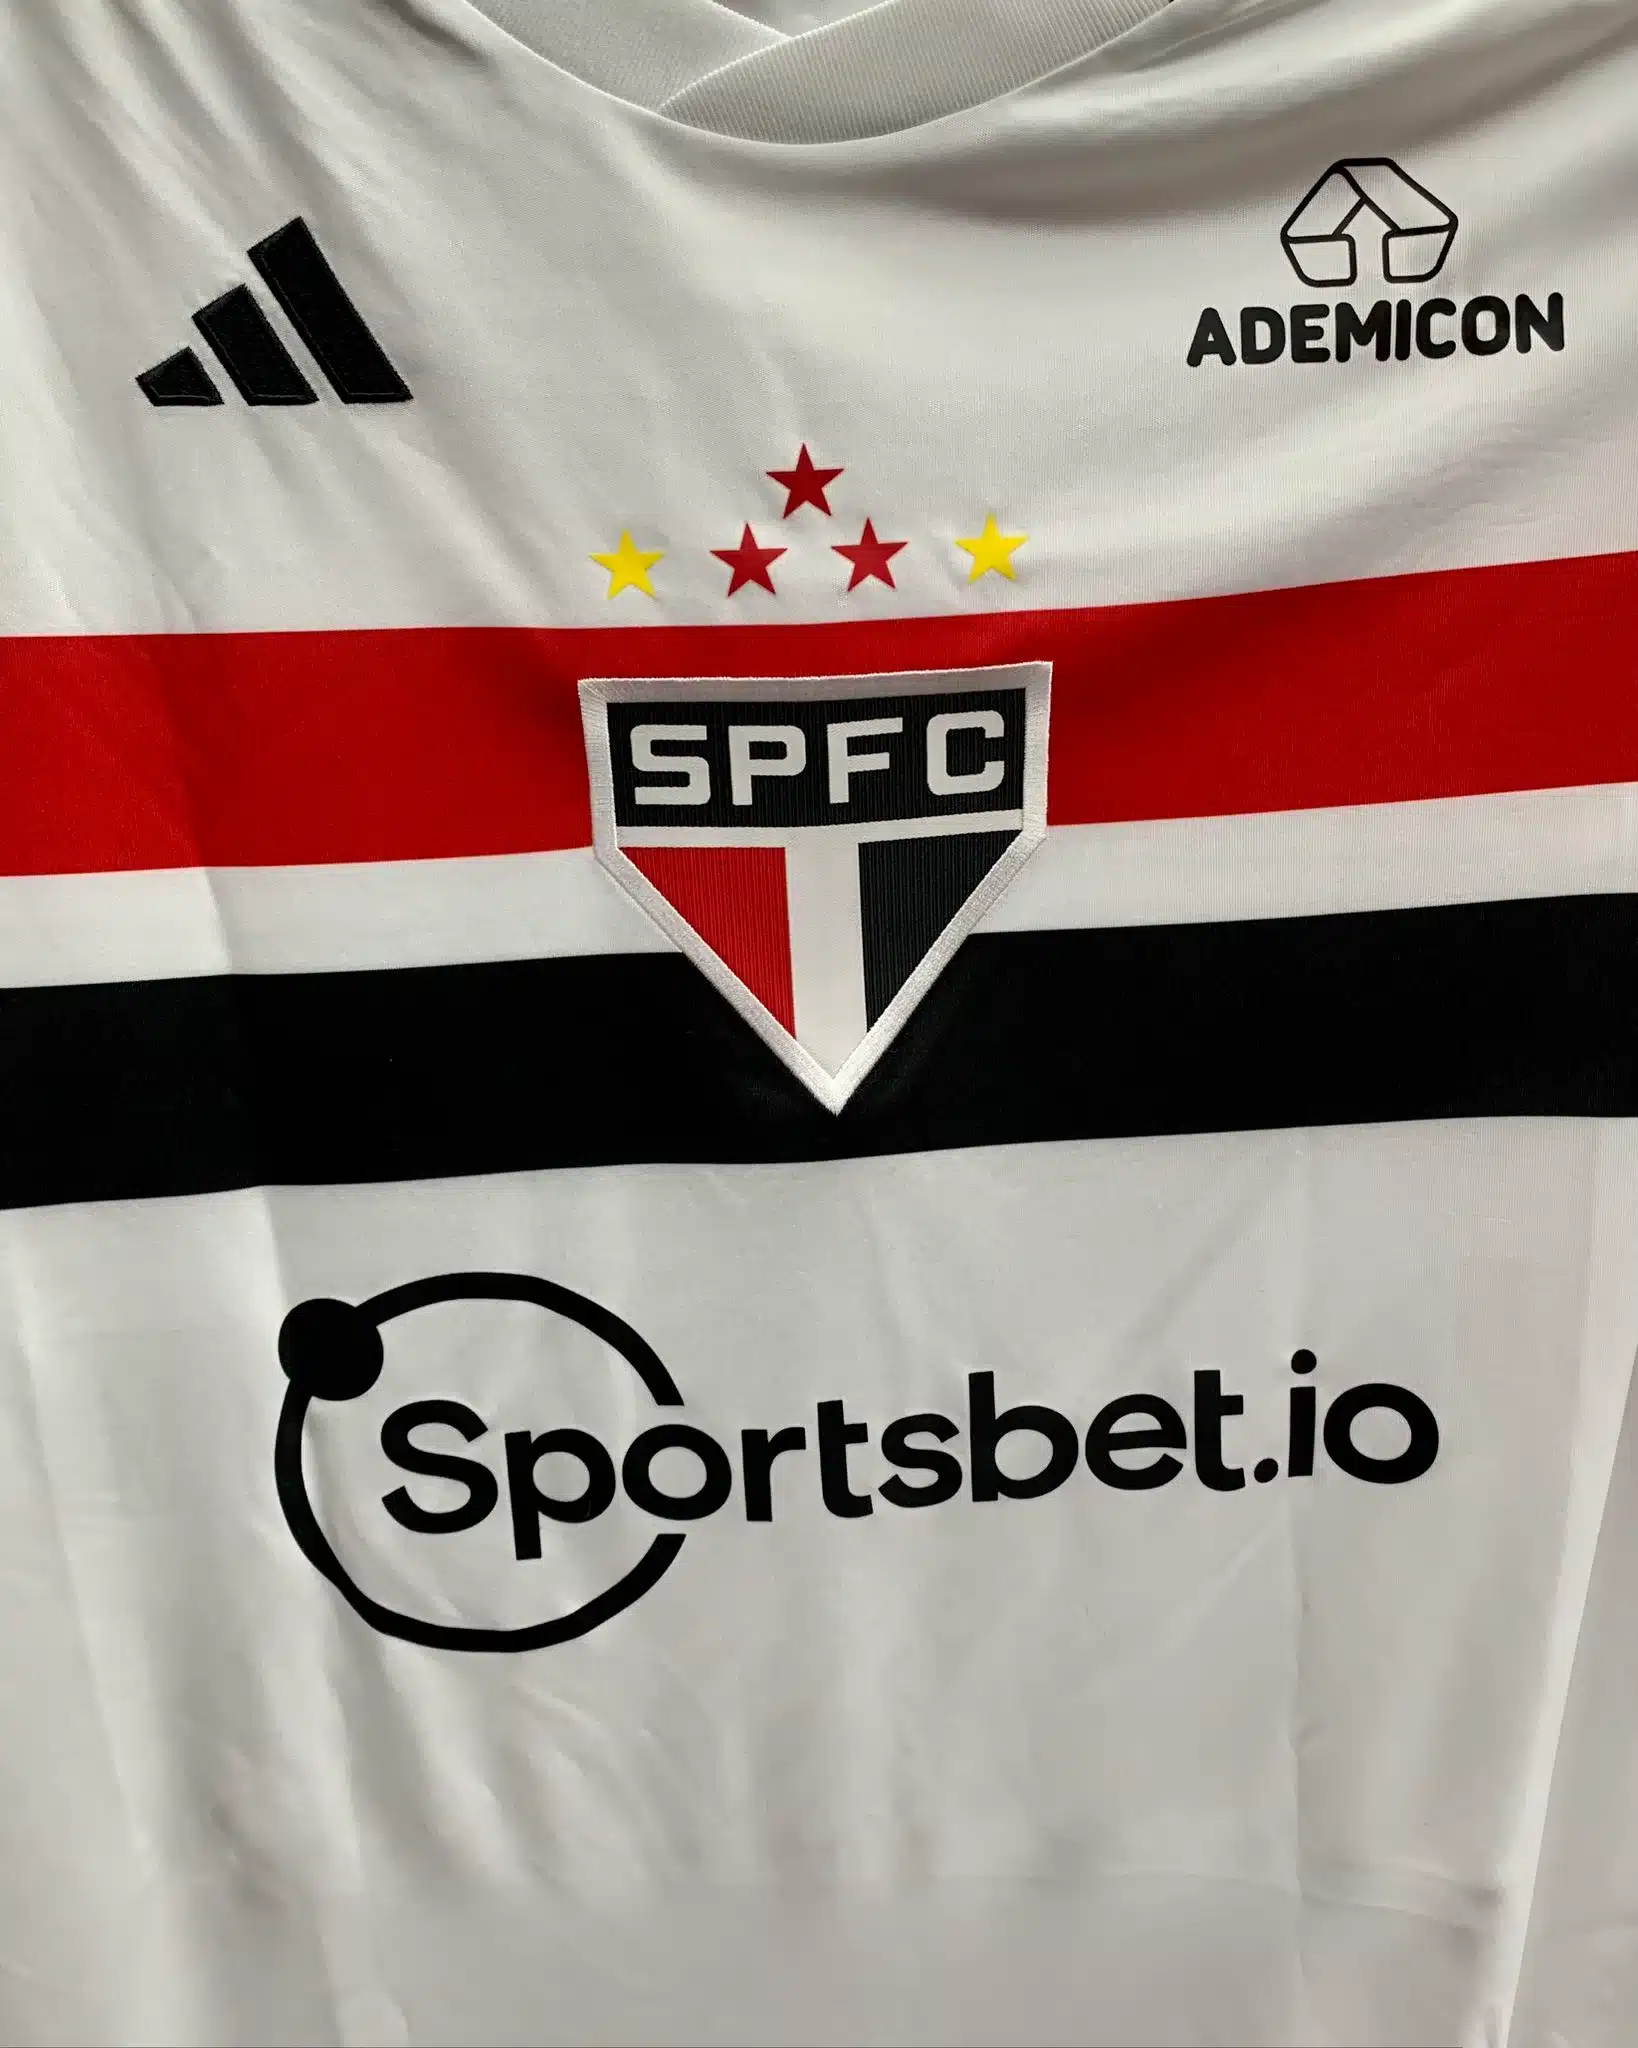 São Paulo anuncia novo patrocinador com contrato até o final de 2024